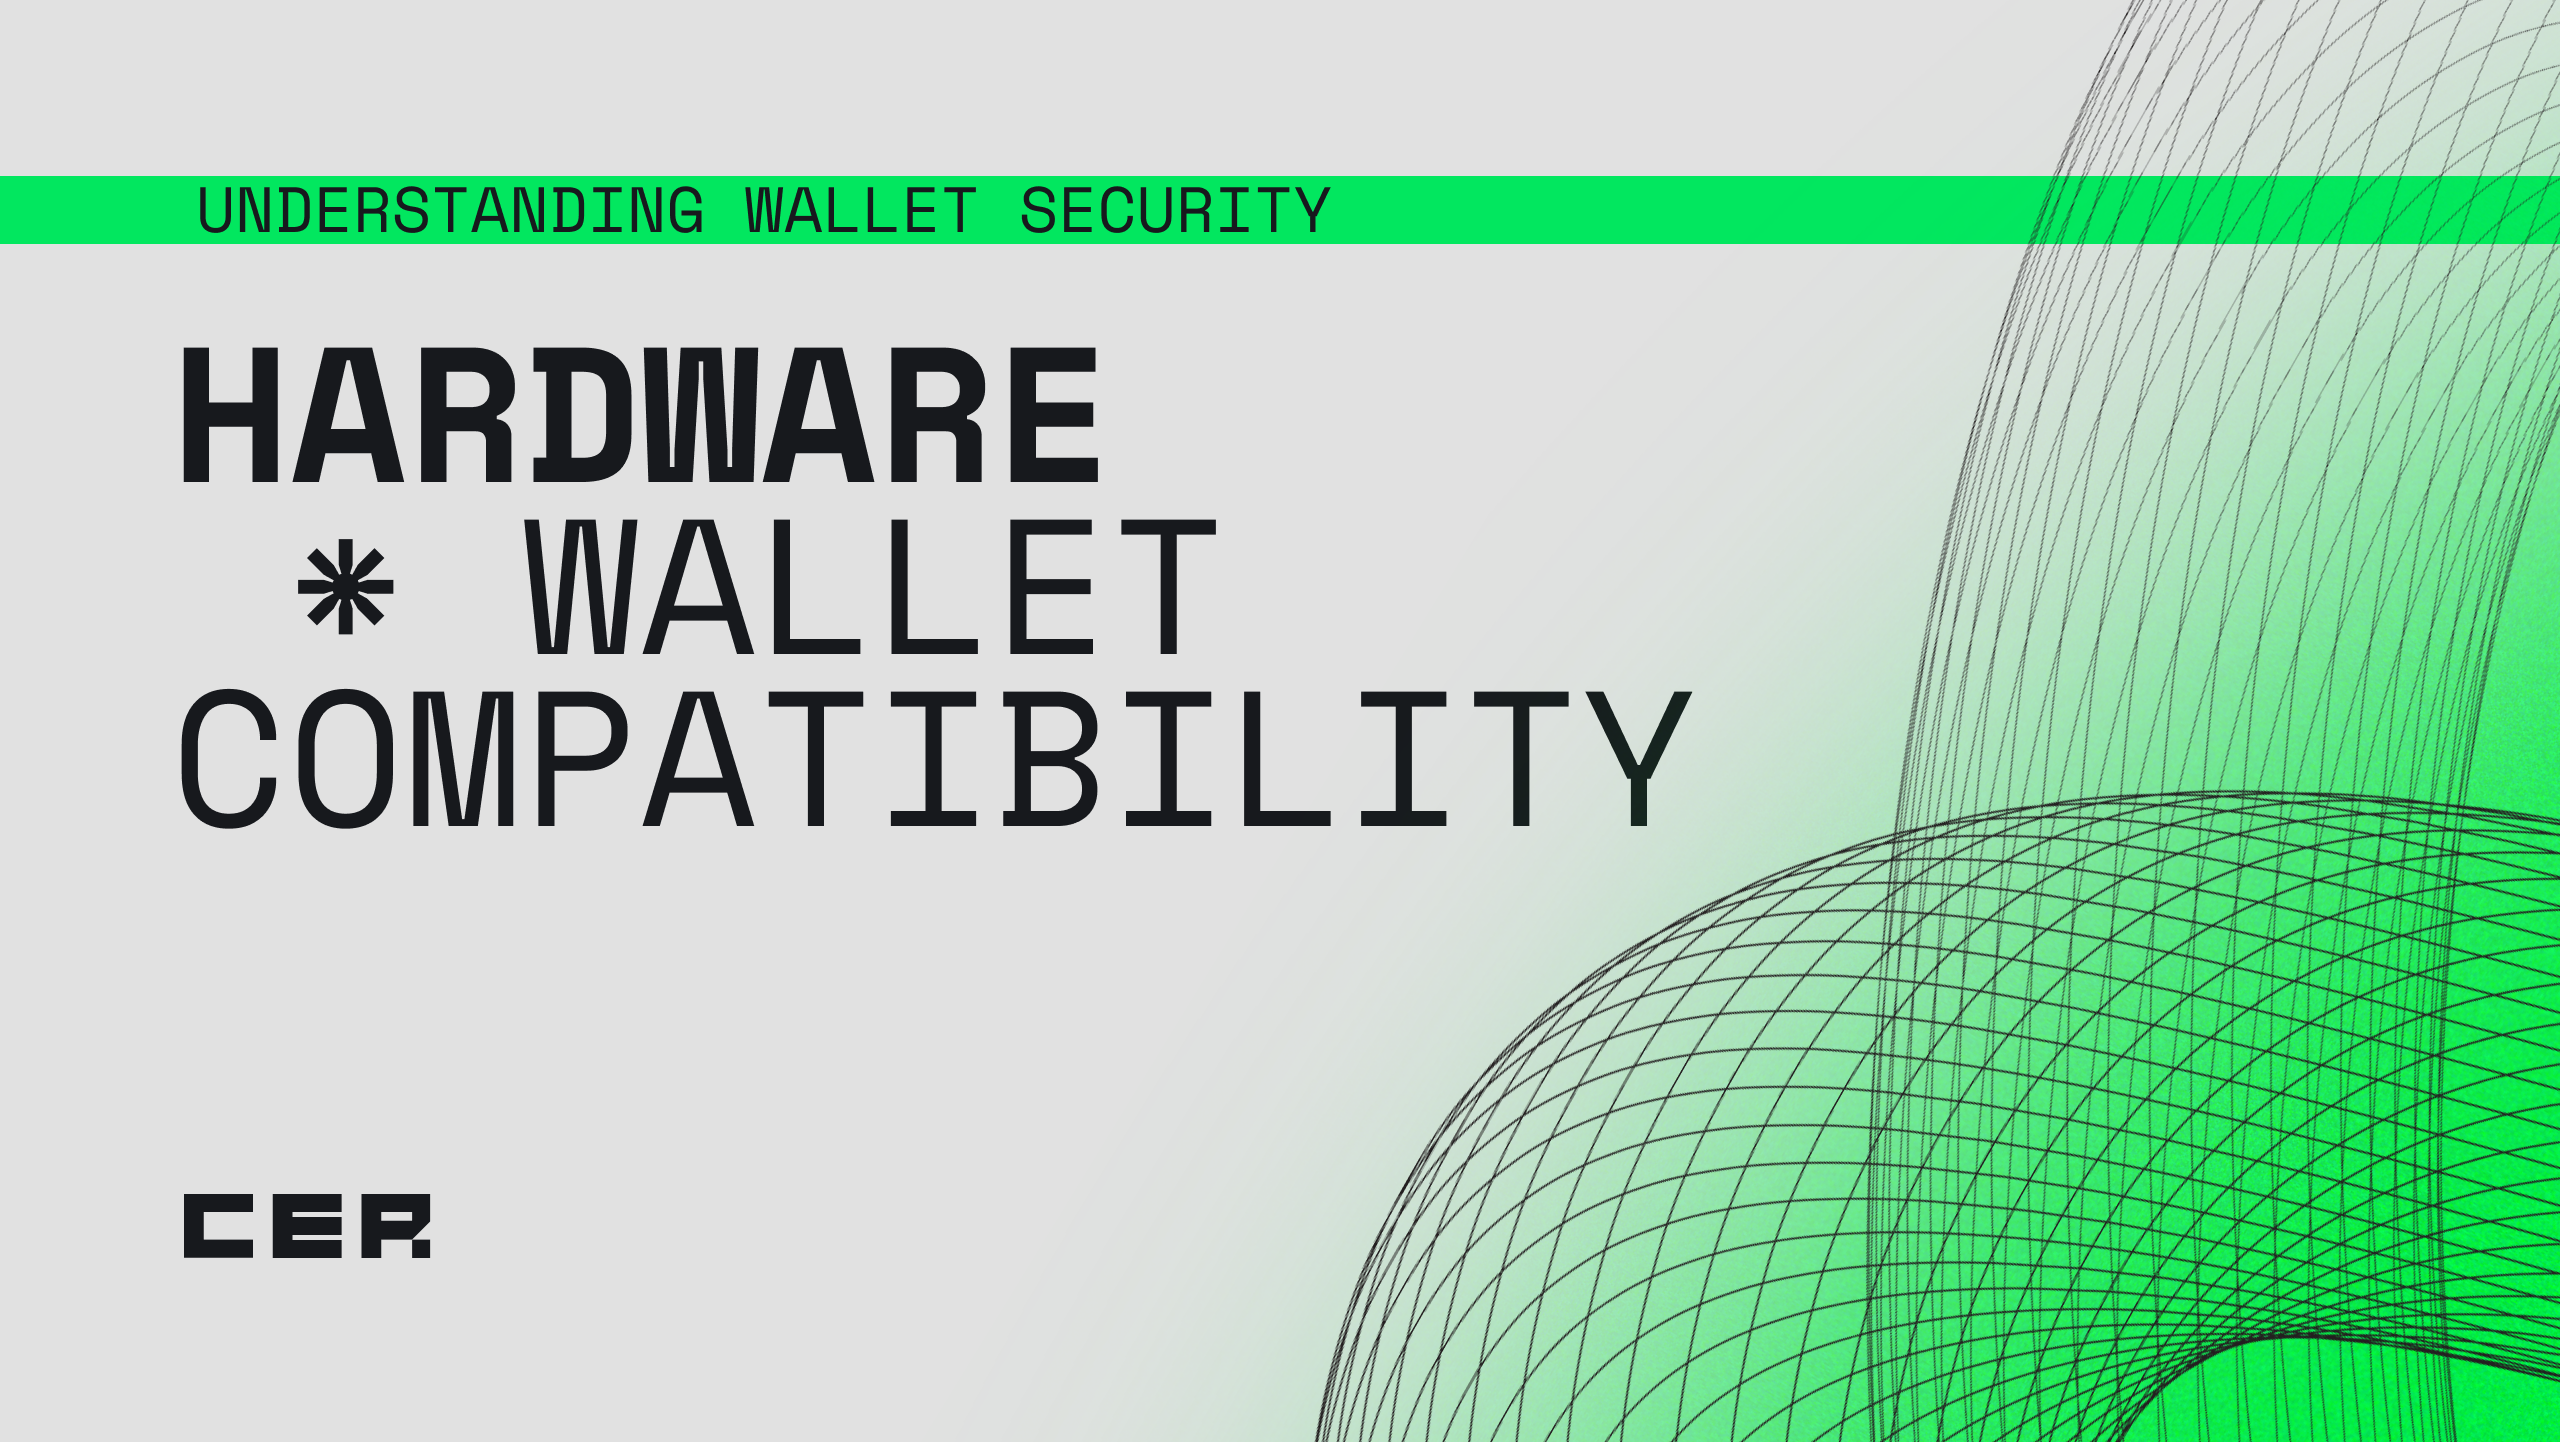 Understanding wallet security: Hardware Wallet Compatibilityimage